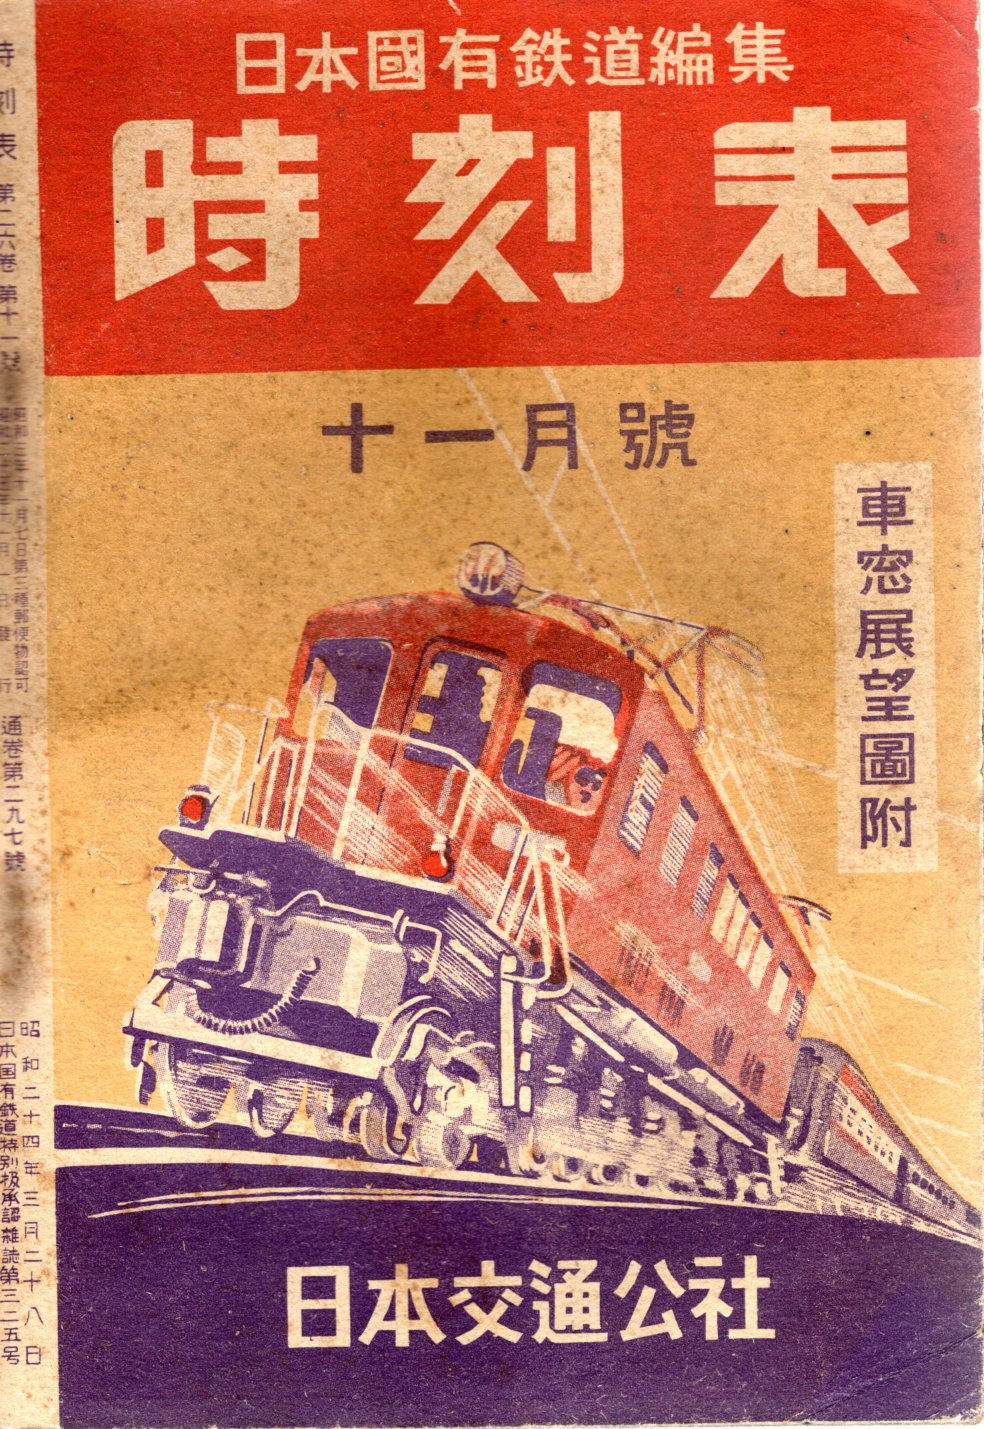 JTB時刻表1950年11月号